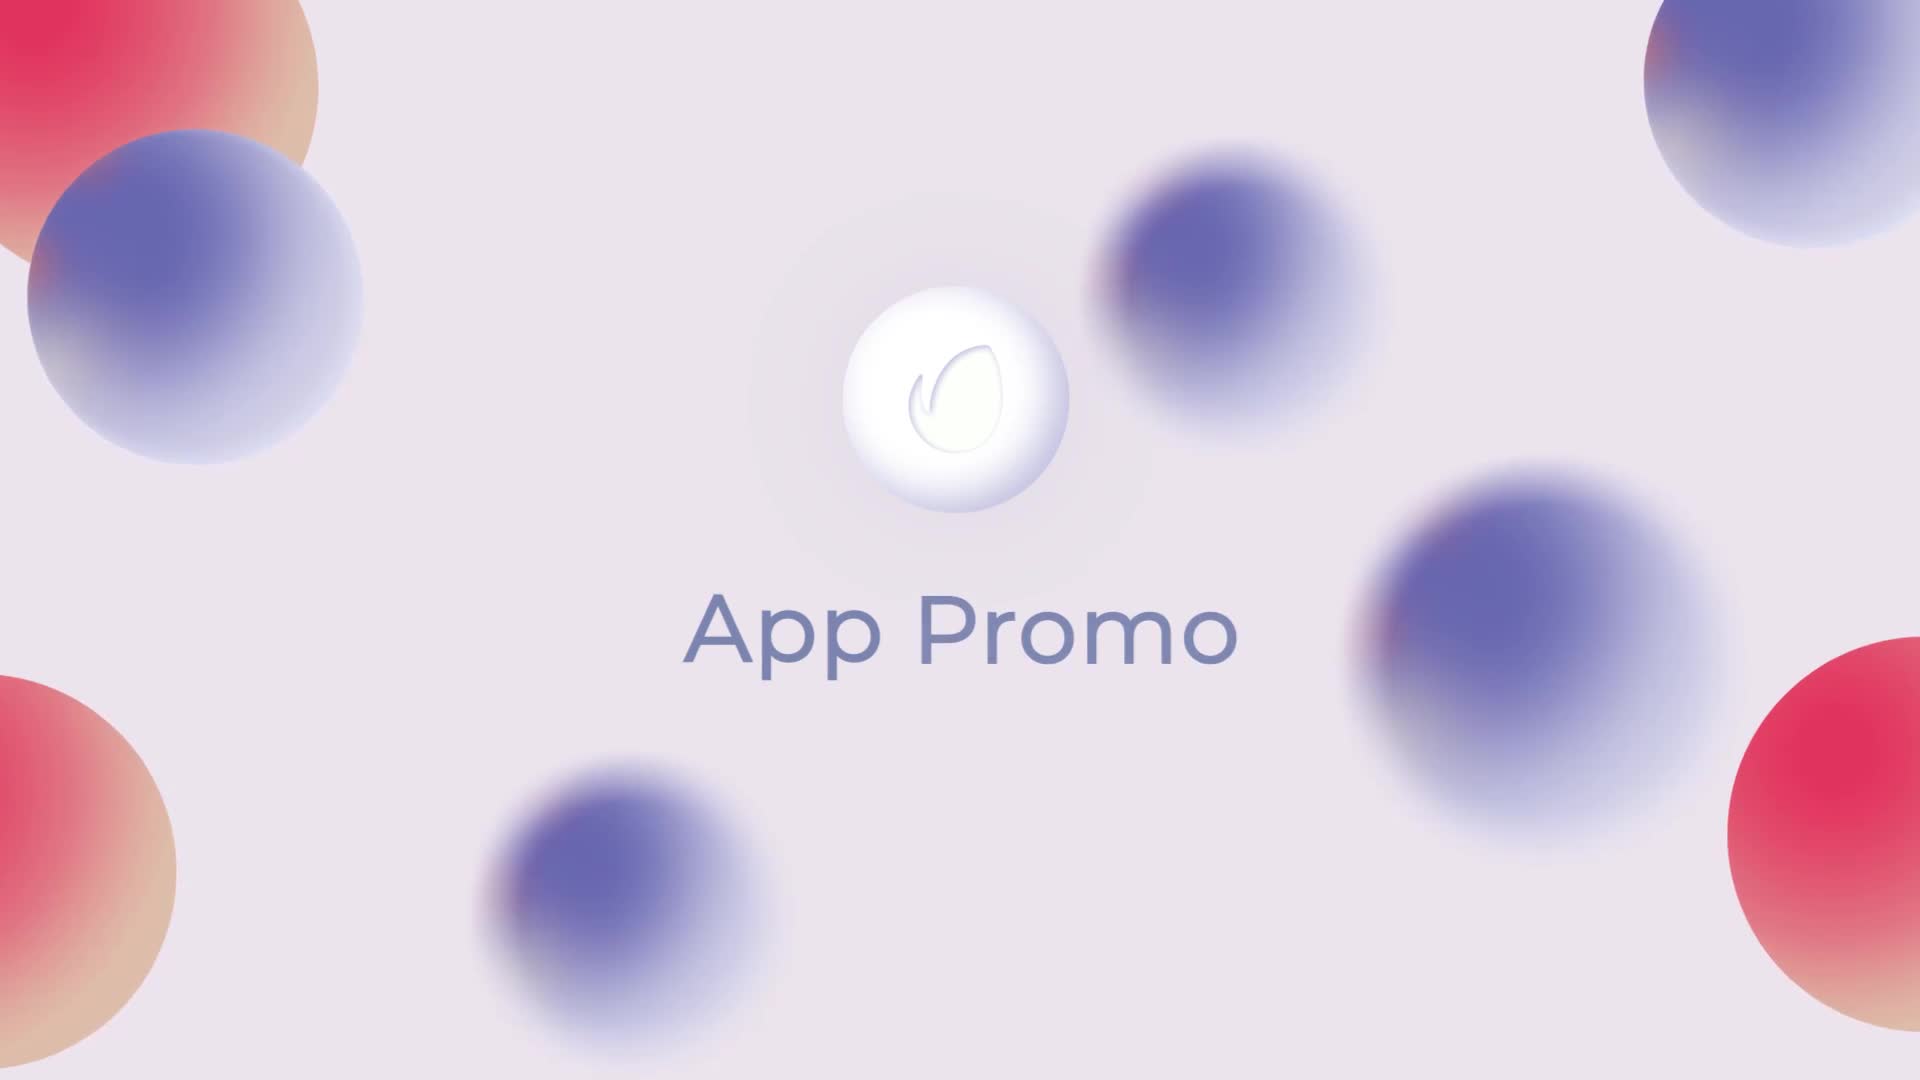 Mobile App Promo | Mogrt Videohive 35852052 Premiere Pro Image 1